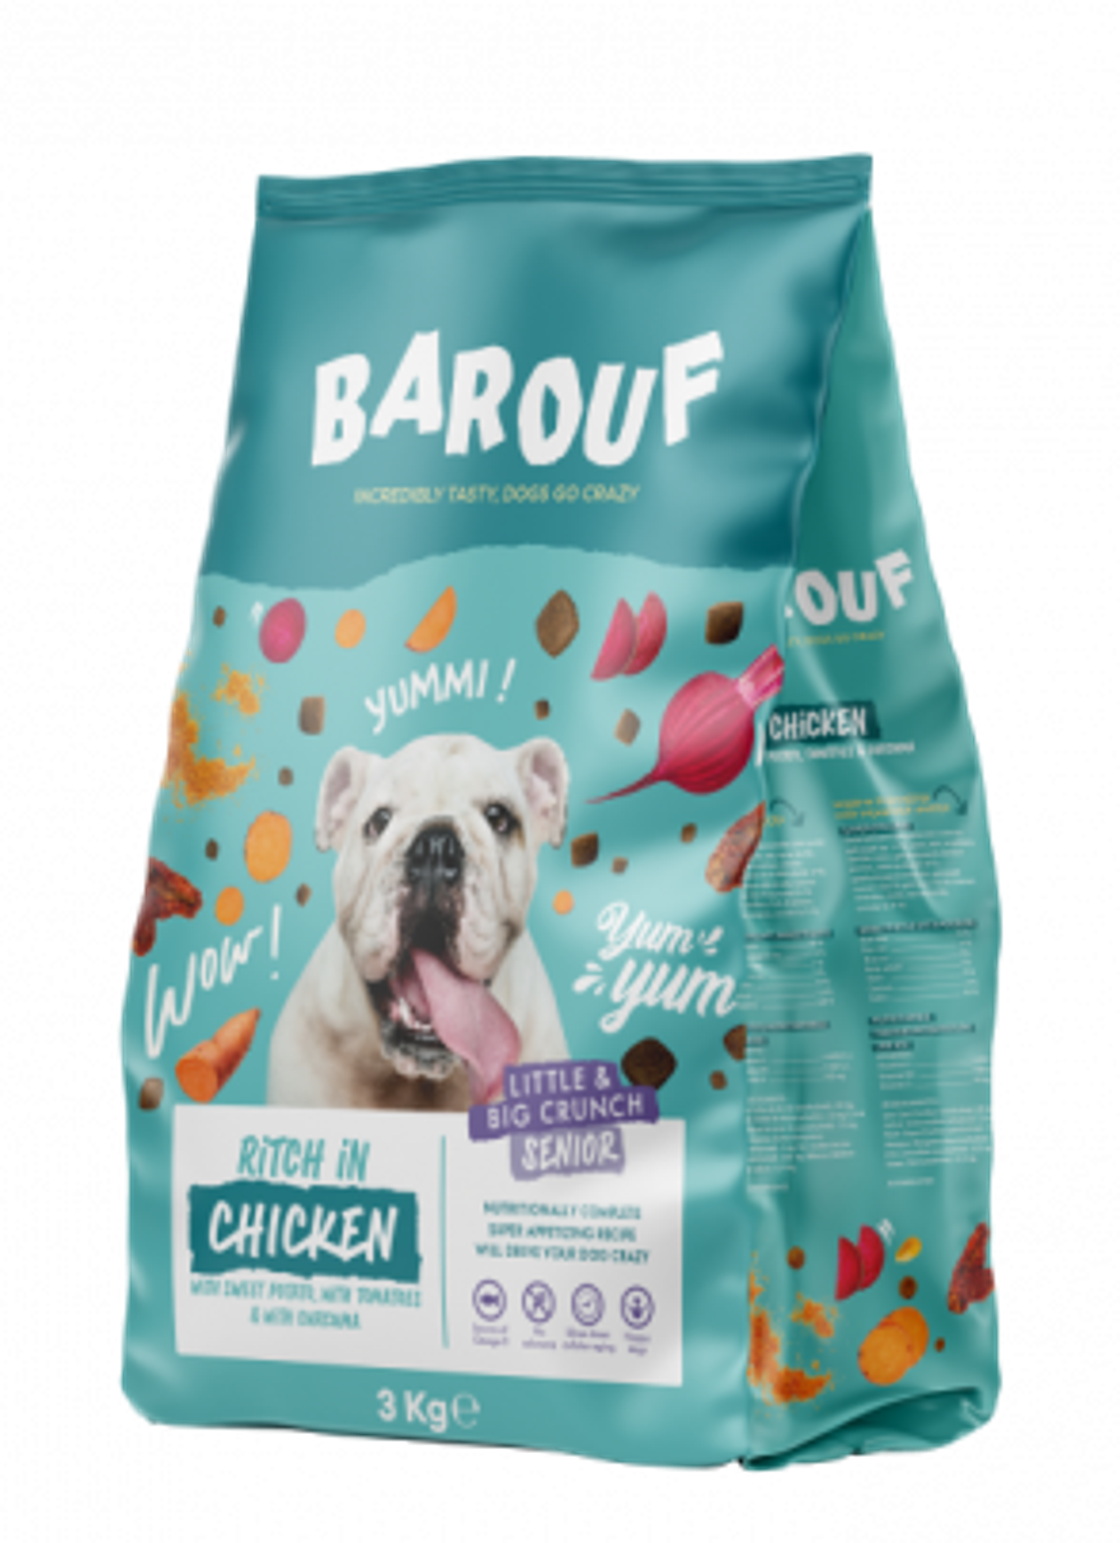 Les croquettes pour chiens Barouf élues « Produit Distributeur de l’Année 2023 » par les consommateurs belges